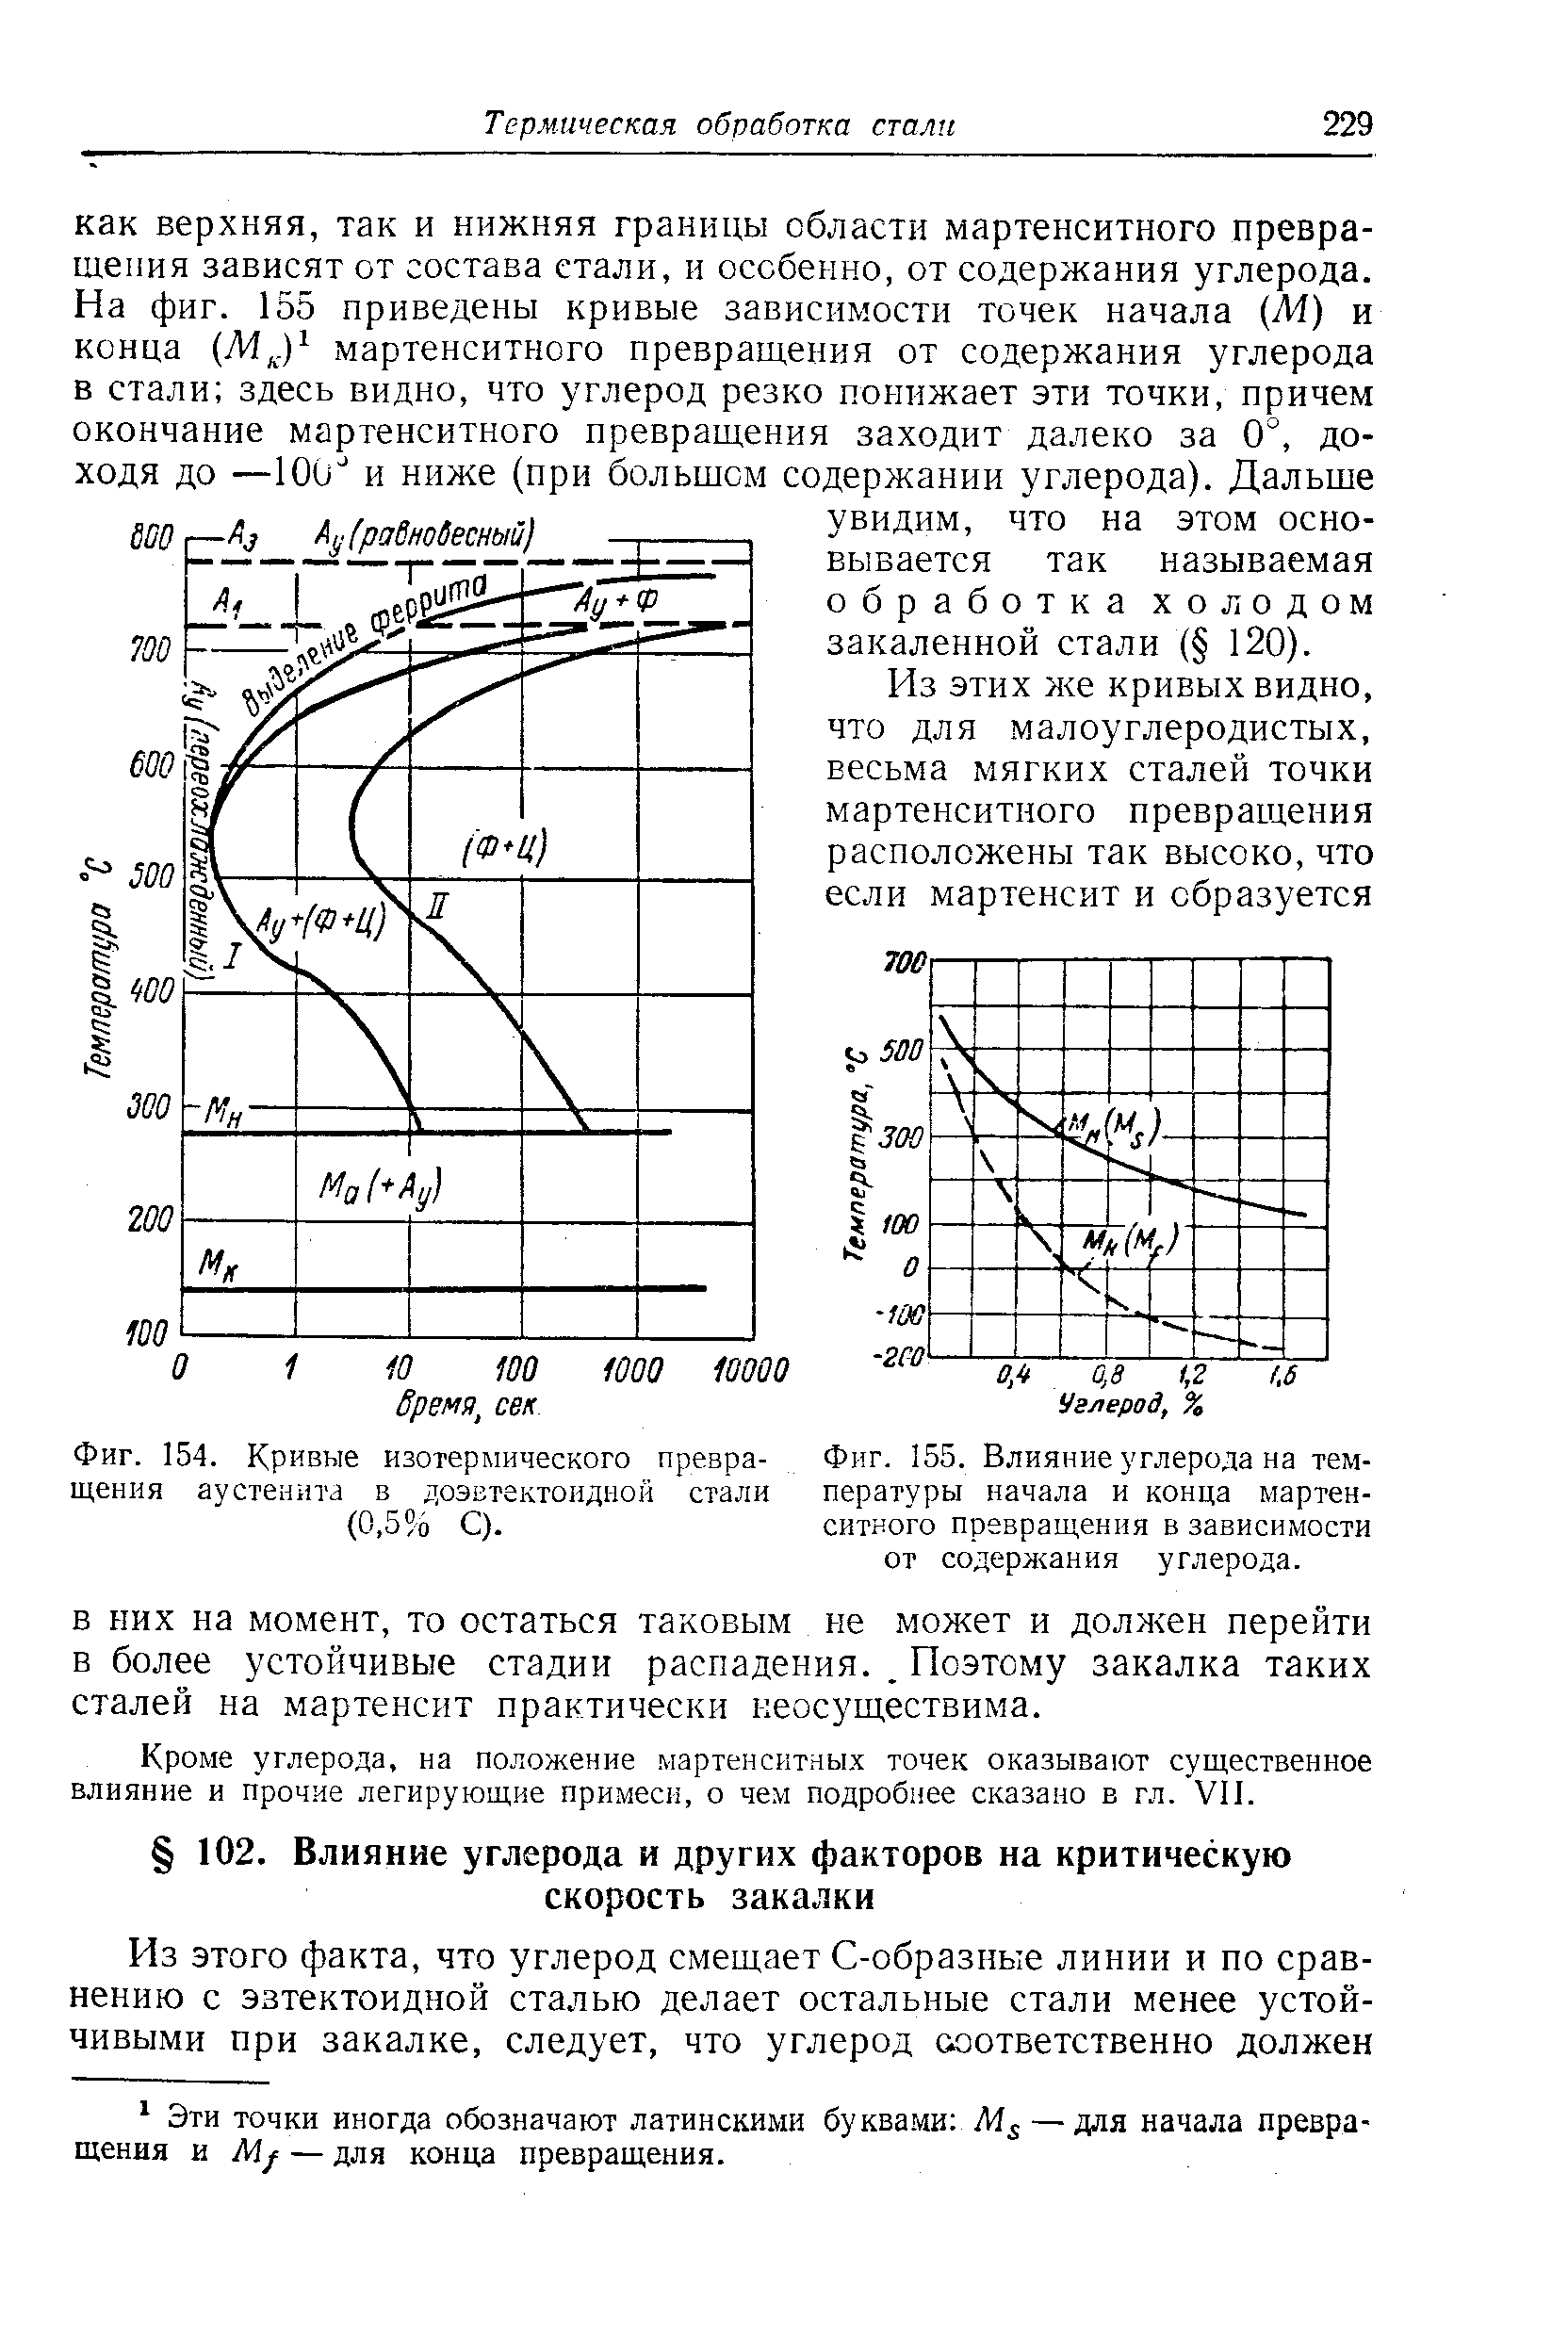 Фиг. 154. Кривые изотермического превращения аустенита в доэвтектоидной стали (0.5 0 С).
